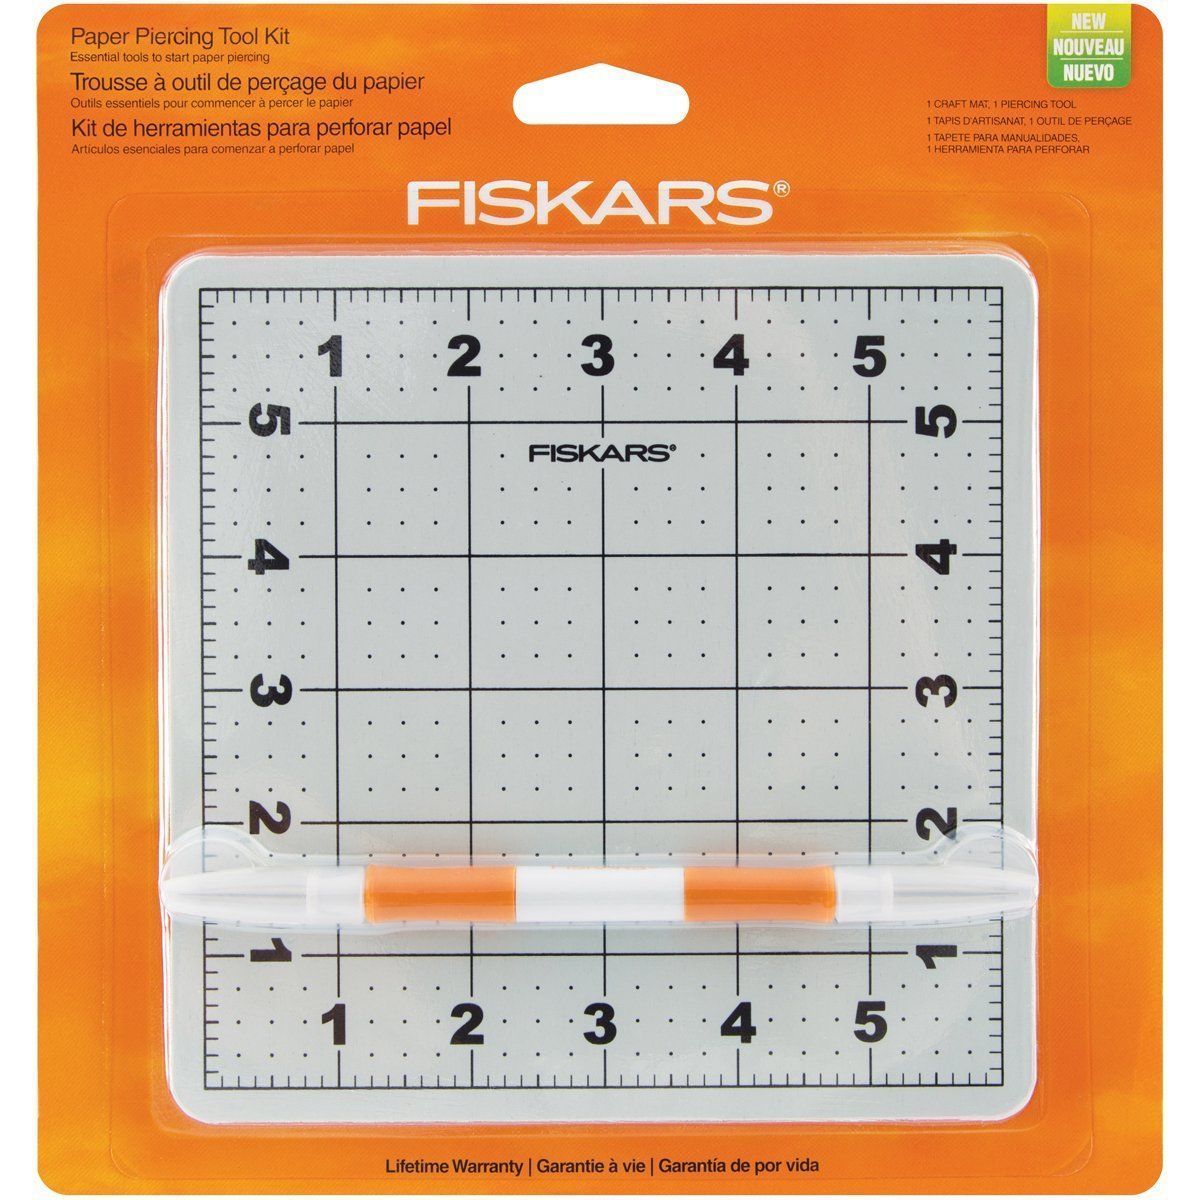 Fiskars 118860 Paper Piercing Tool Kit